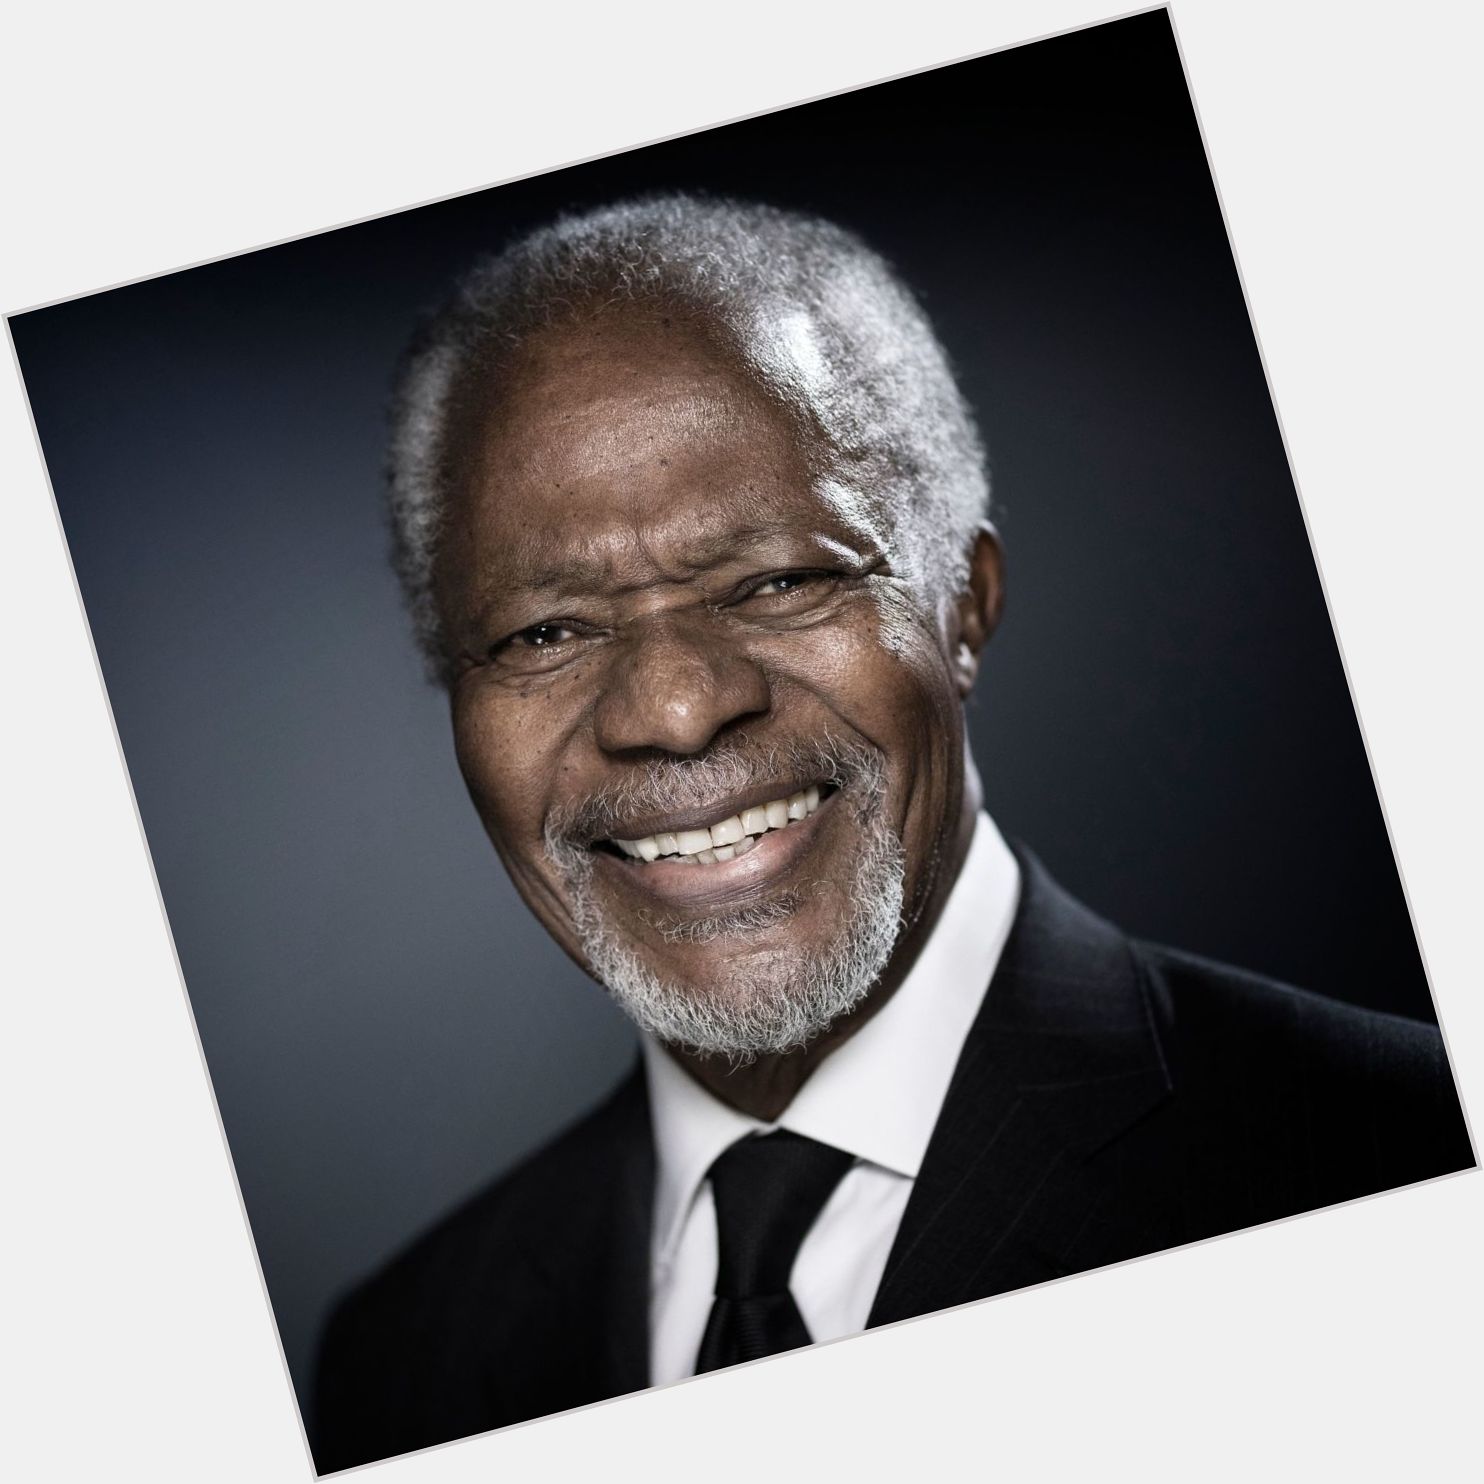  Happy 84th birthday to Former UN Secretary General Kofi Annan.  